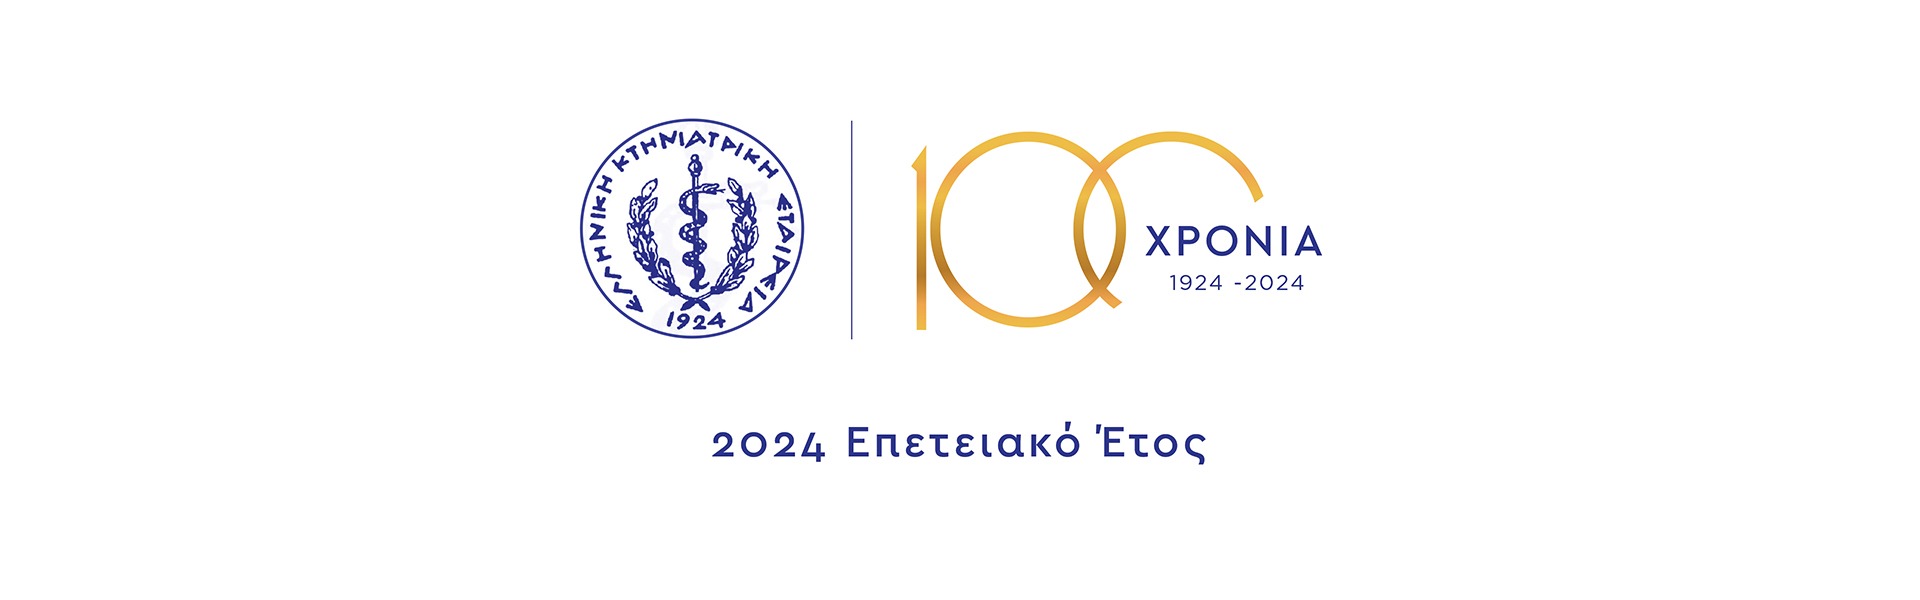 EKE-100XRONIA